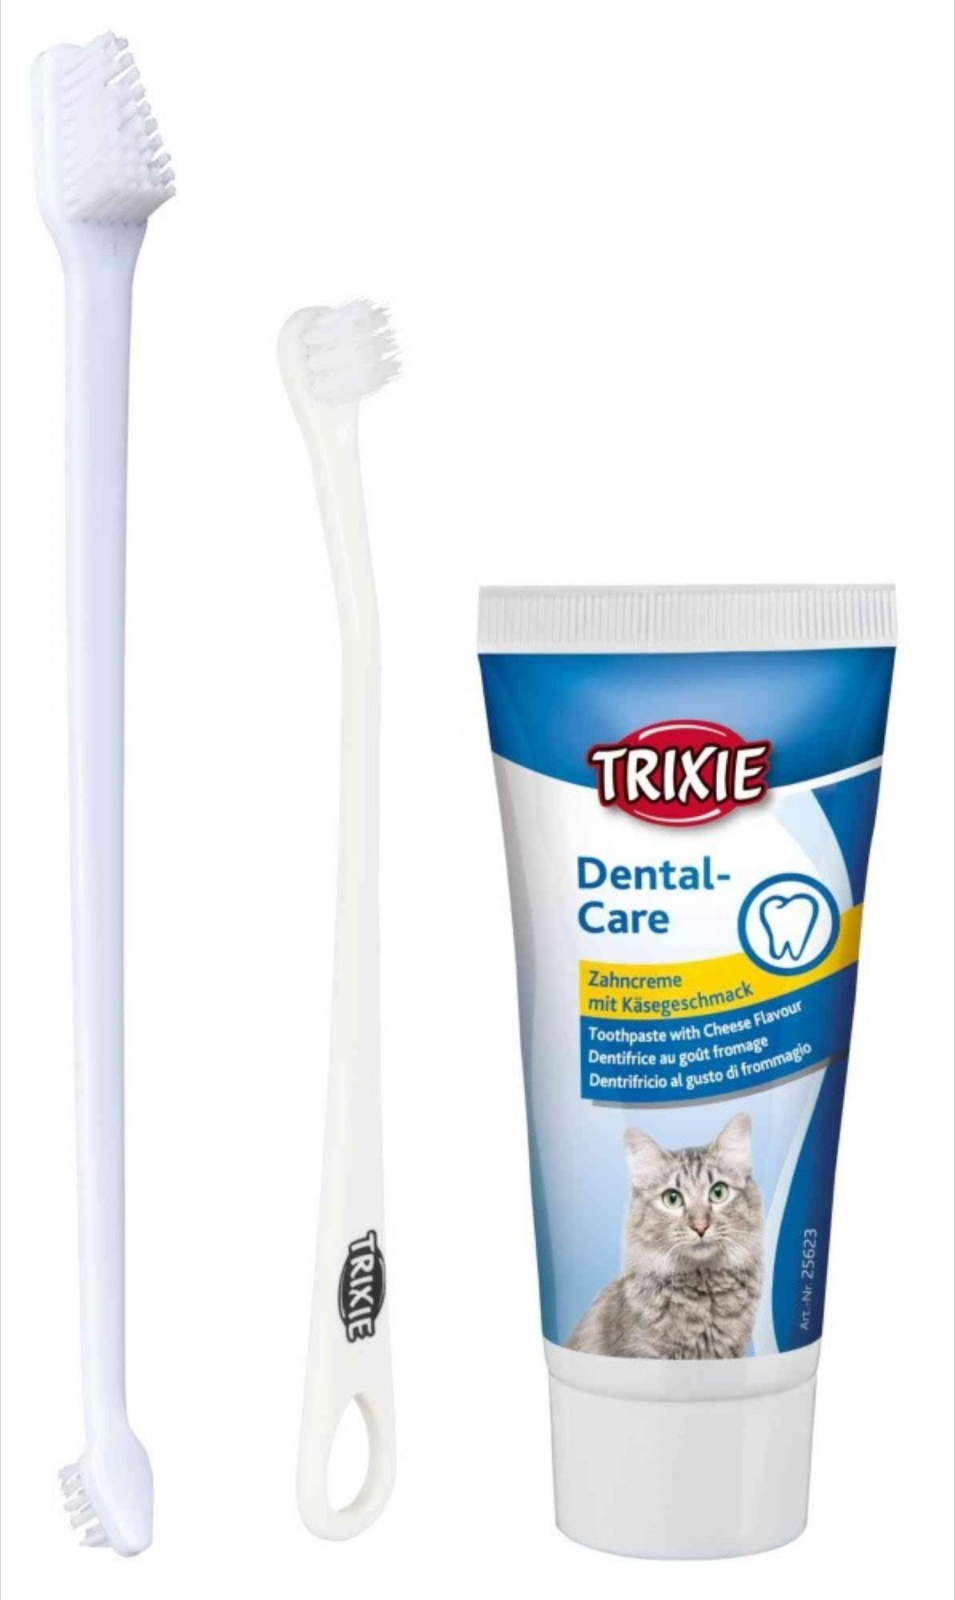 Косточка для чистки зубов. Зубная паста трикси для собак. Trixie Dental Care зубная щетка для собак и кошек, 6 см 2 шт. Trixie зубная паста для кошек. Зубная щетка для кошек и зубная паста для кошек.